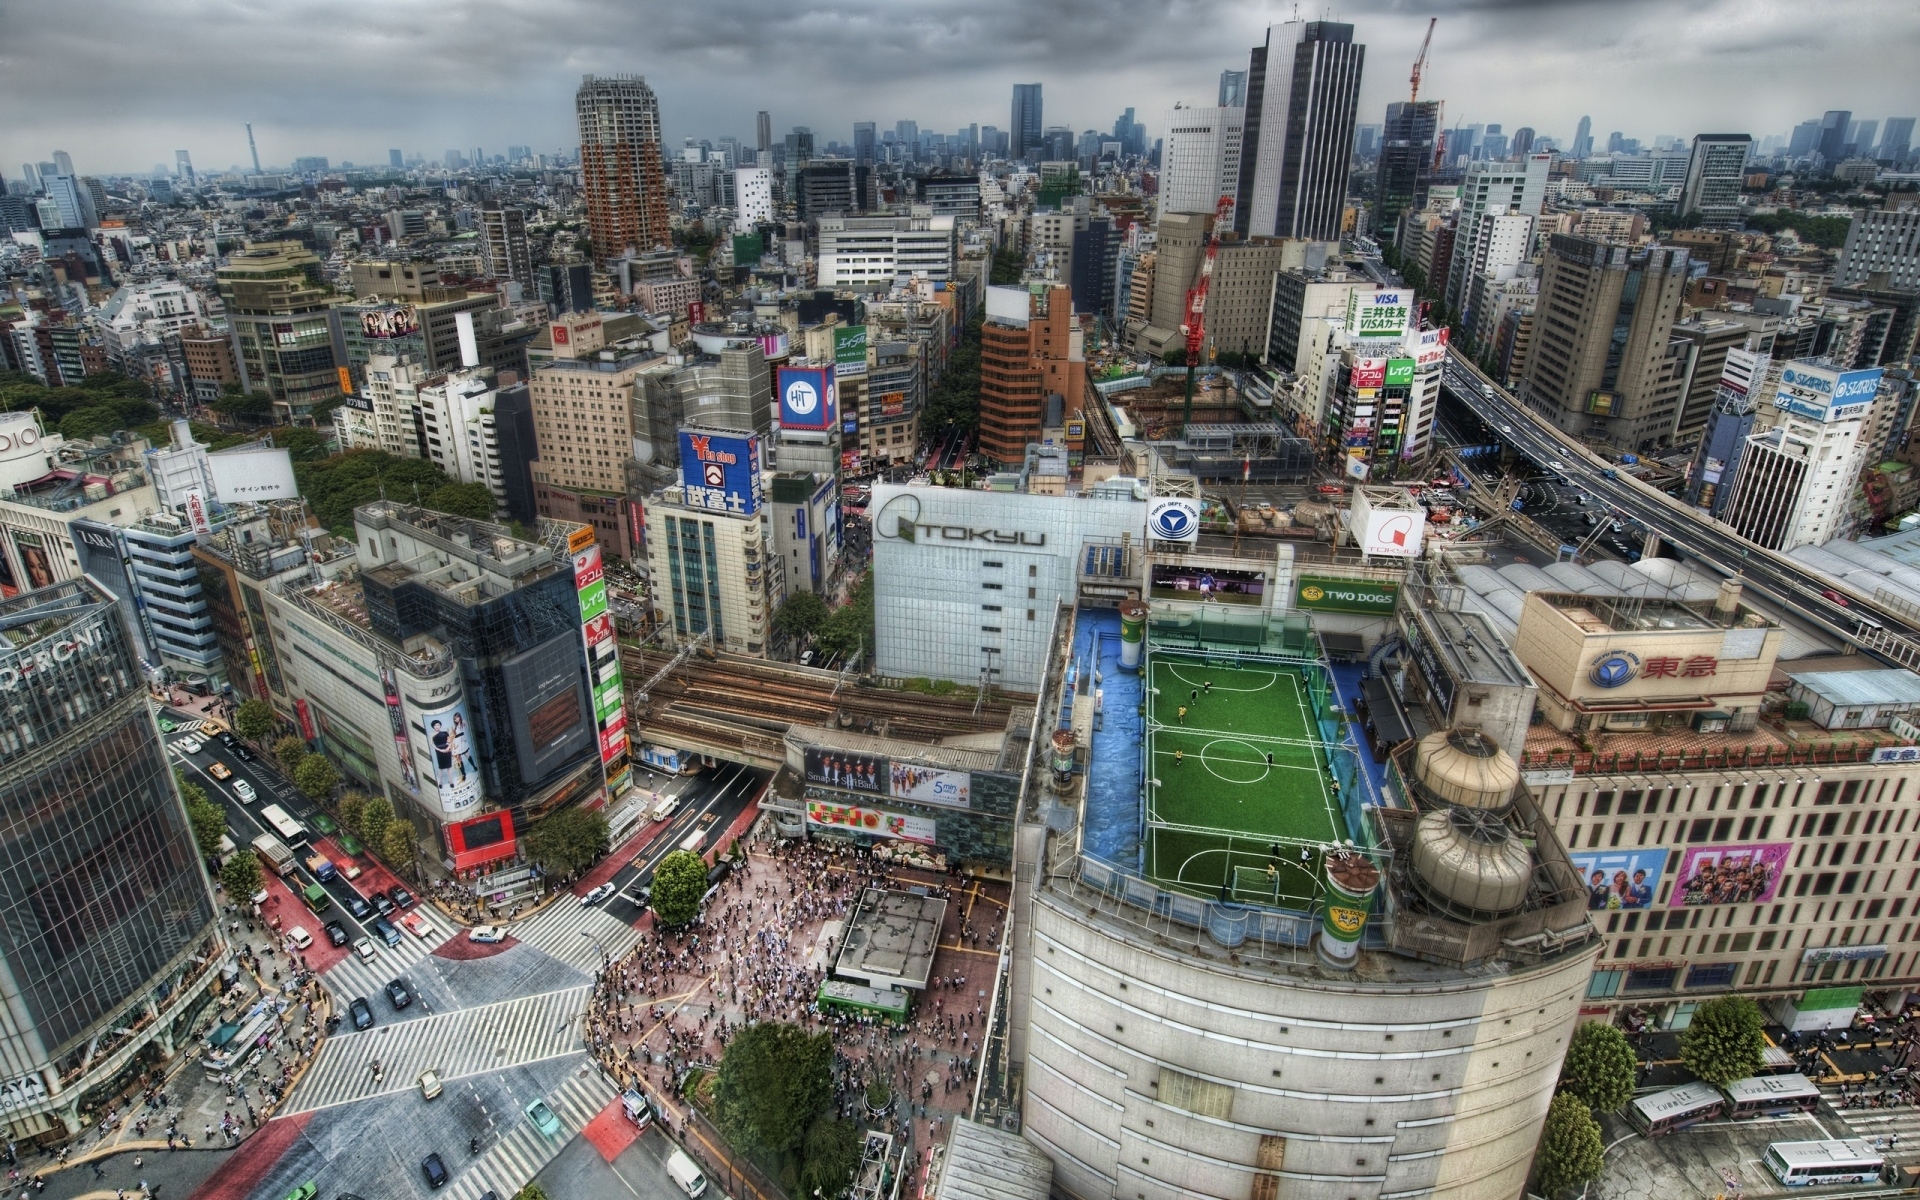 Картинки Tokyo, дом, футбол, метрополис, поле, люди, крыши, толпы, Япония, дорога, hdr фото и обои на рабочий стол